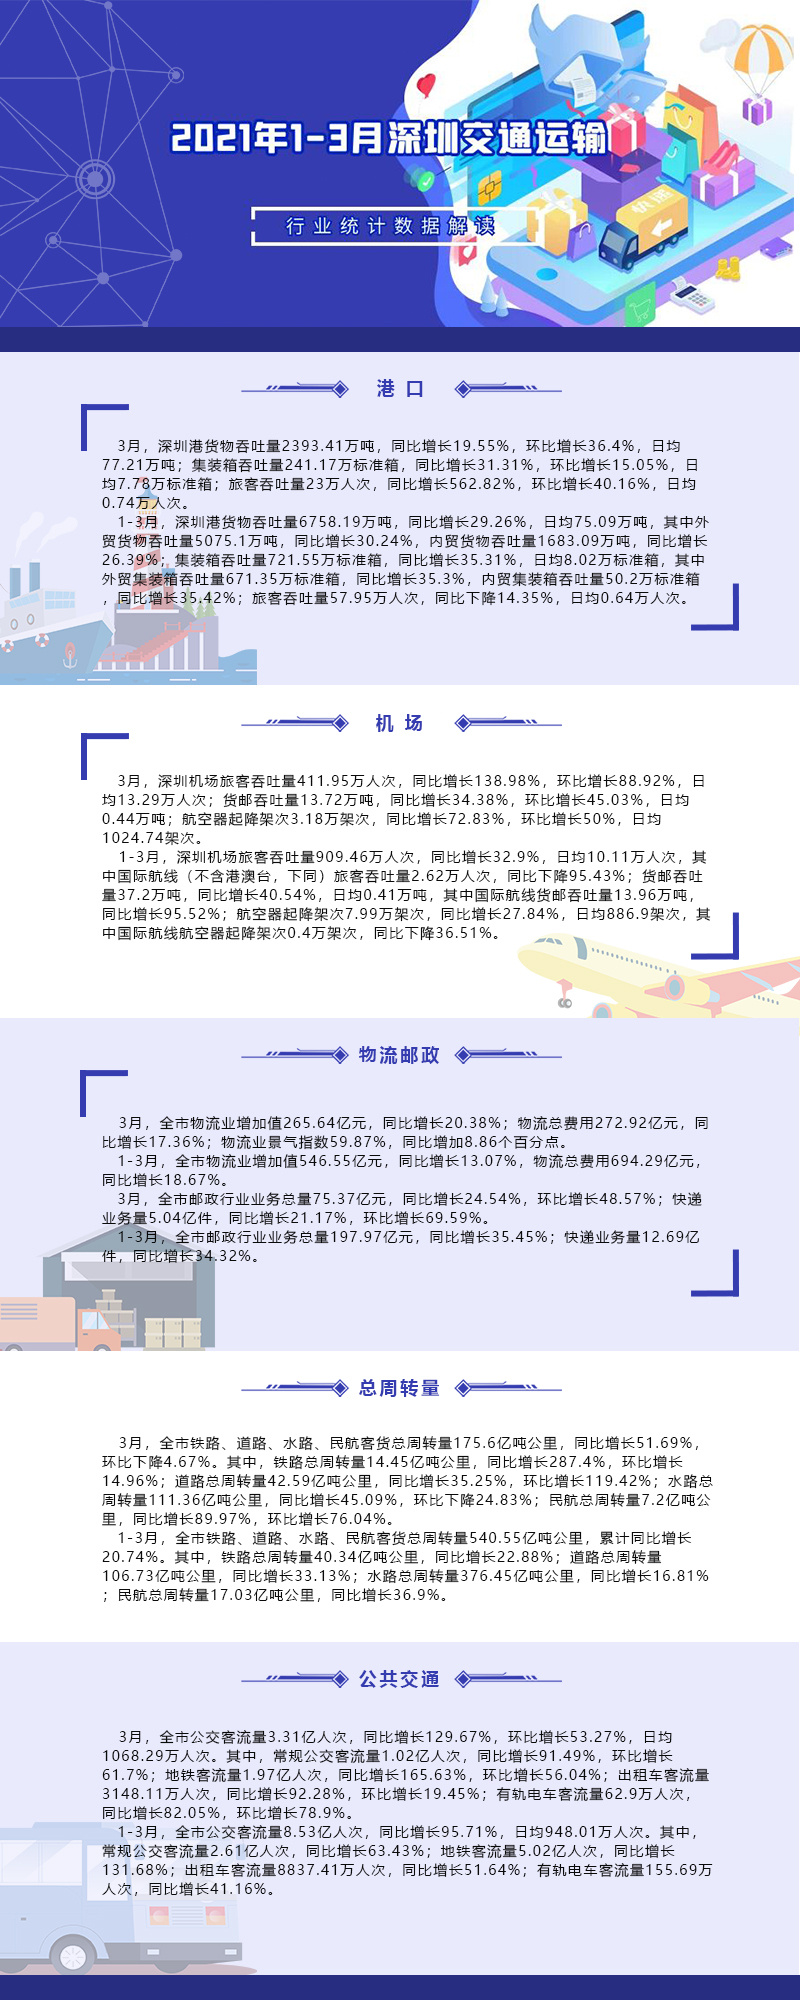 2021年1-3月深圳交通运输行业统计数据解读.jpg